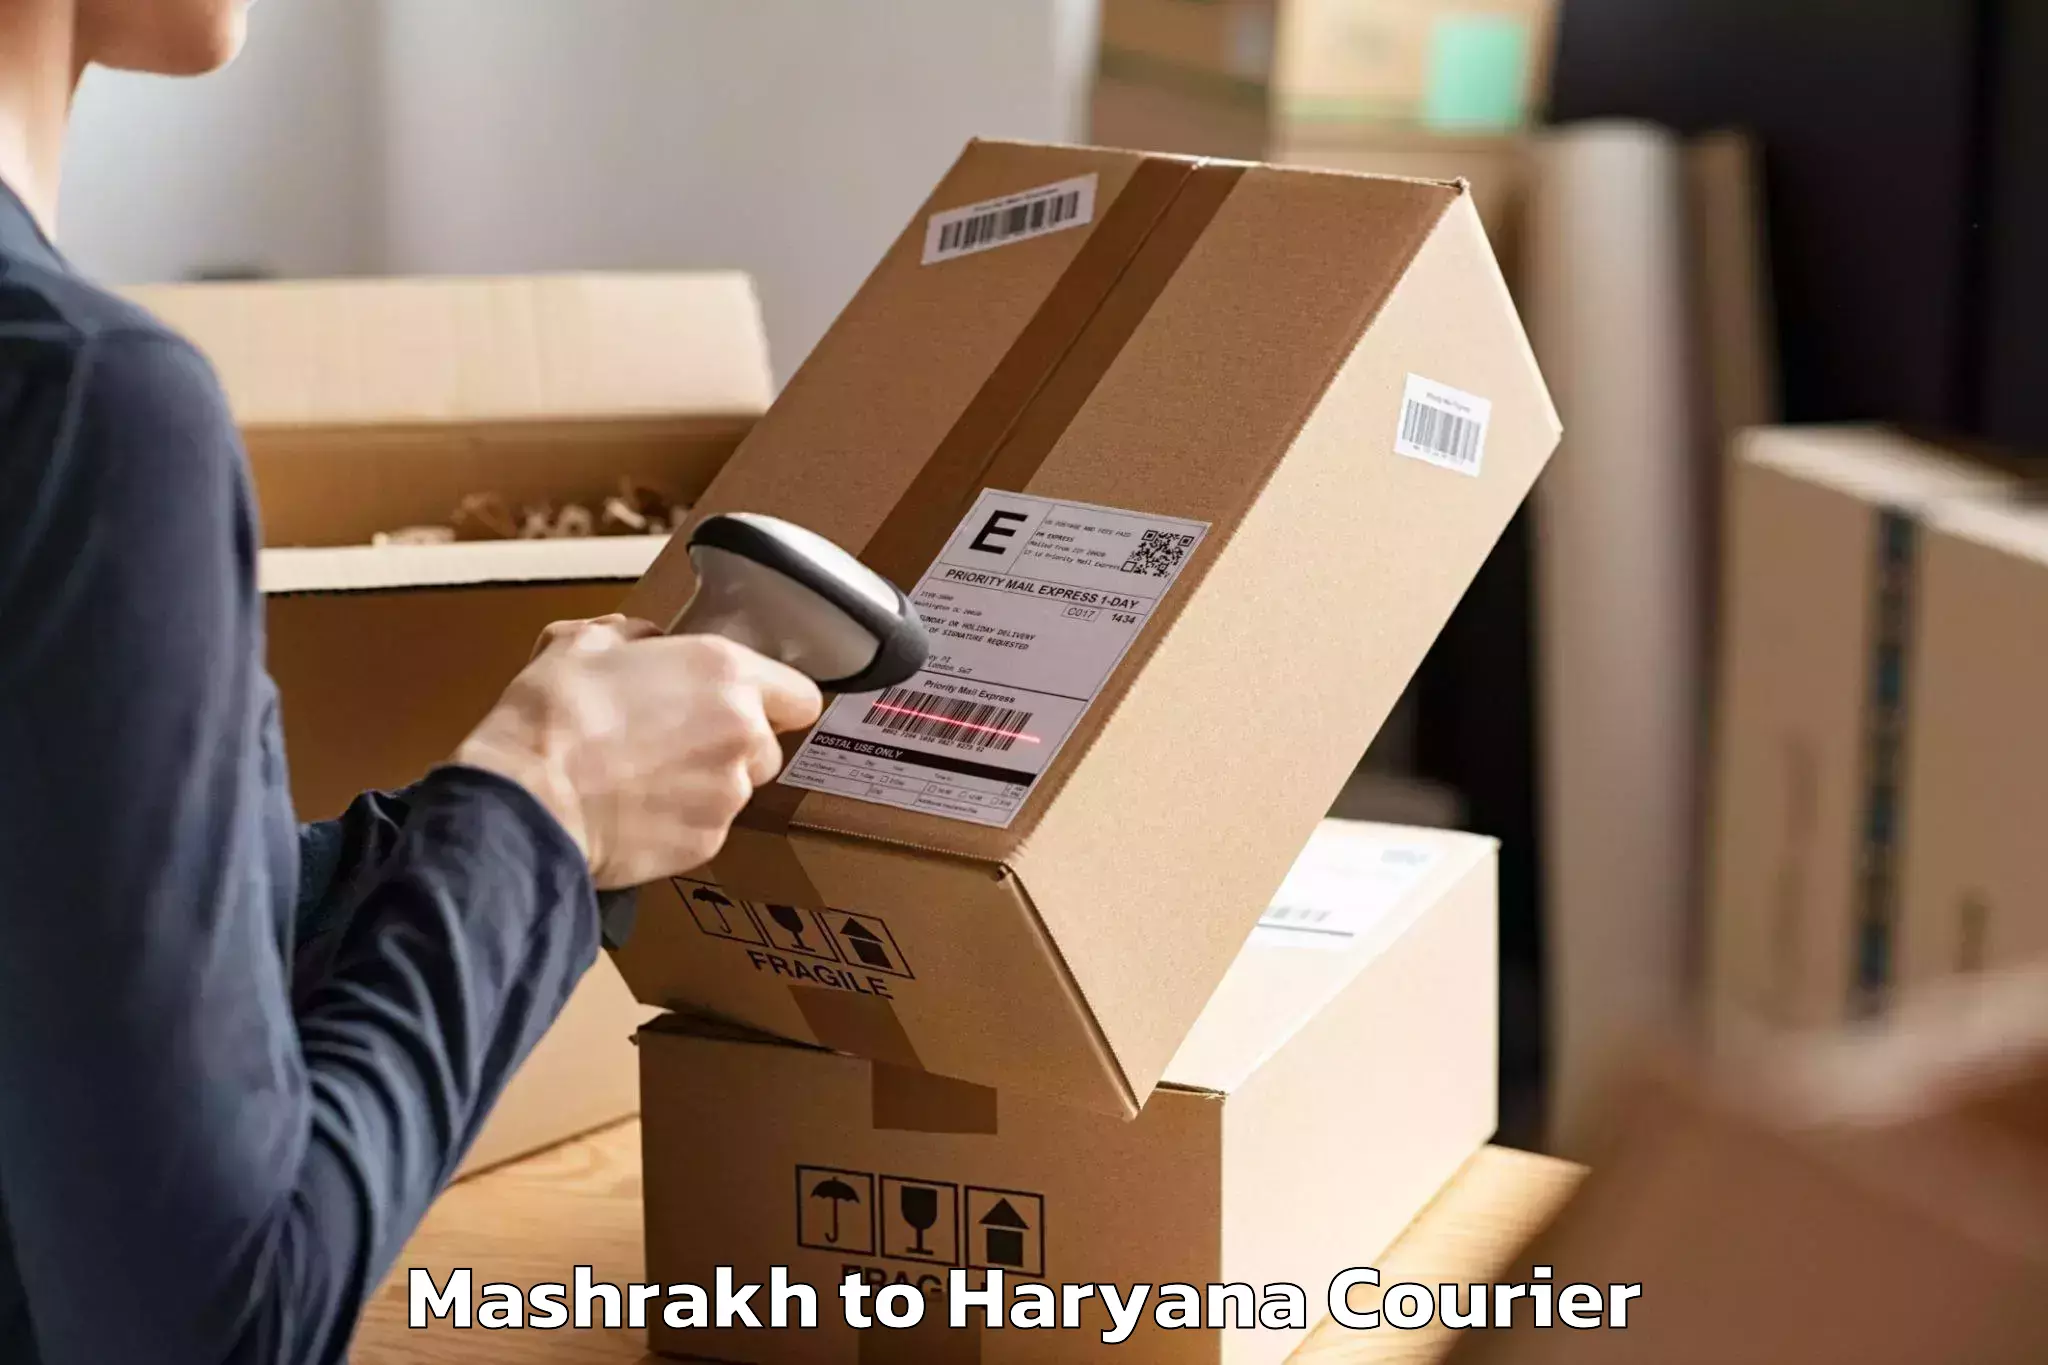 Premium moving services in Mashrakh to Dharuhera